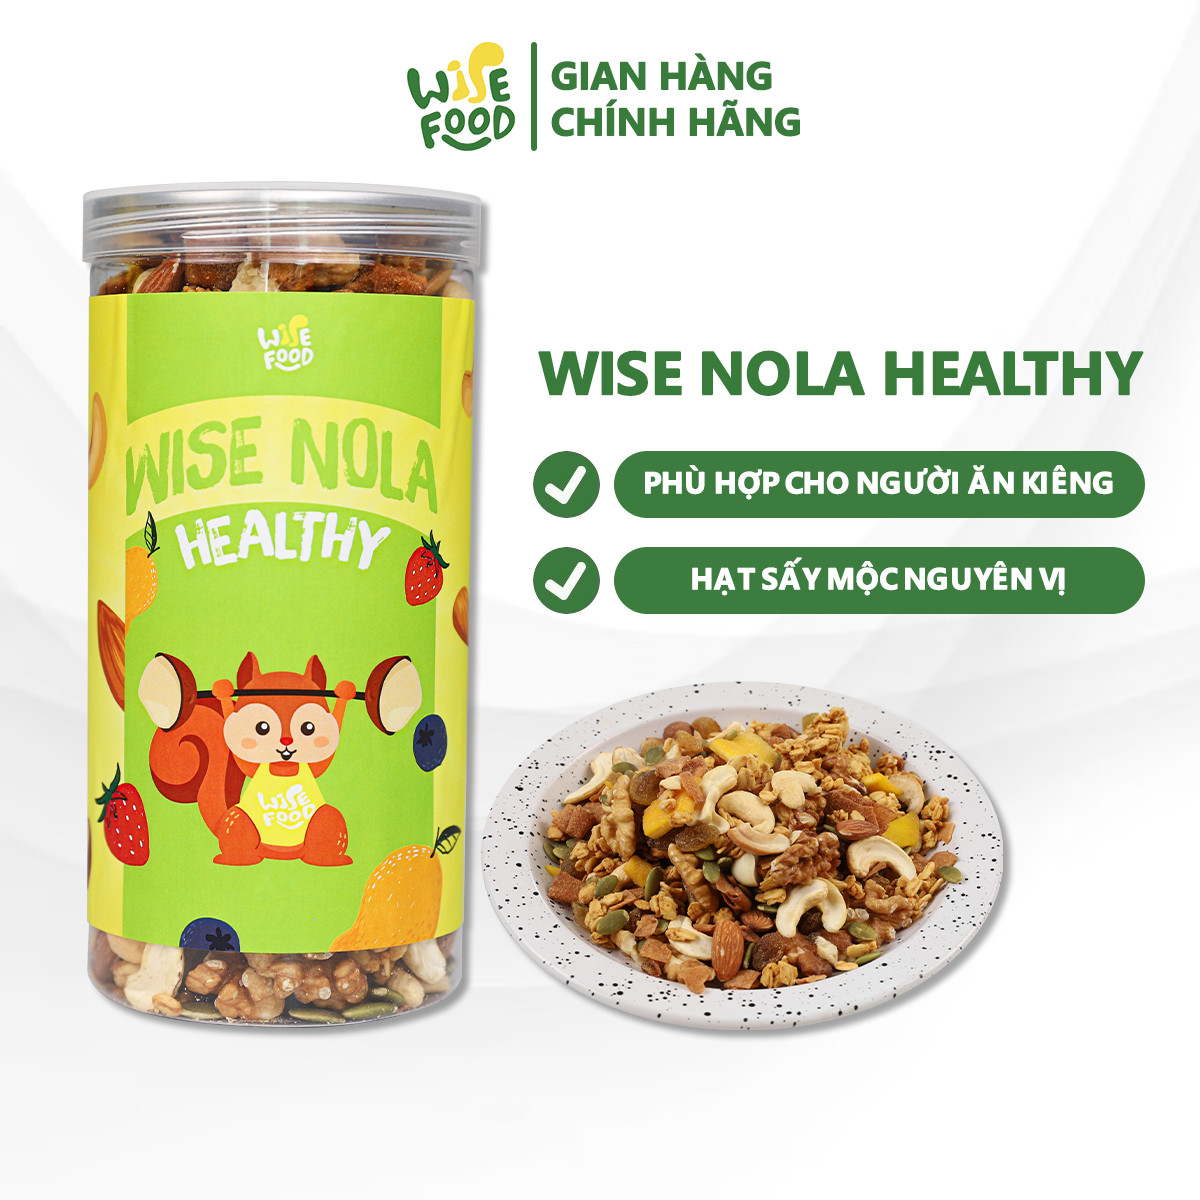 Wise Nola - Granola Healthy Wise Food 500g Phù Hợp Cho Người Ăn Kiêng